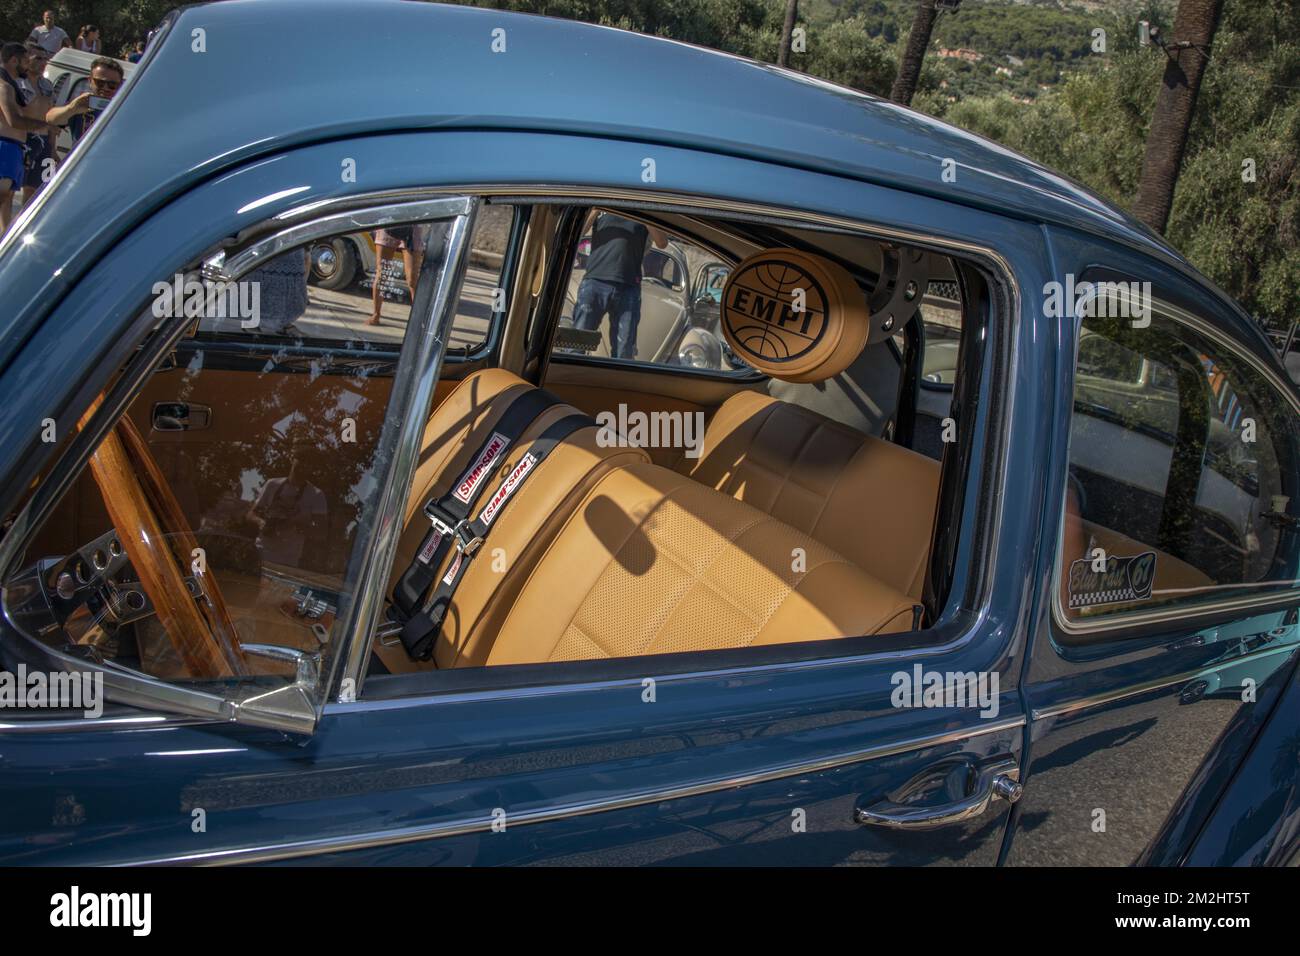 Hotte ornement sur voiture classique Photo Stock - Alamy